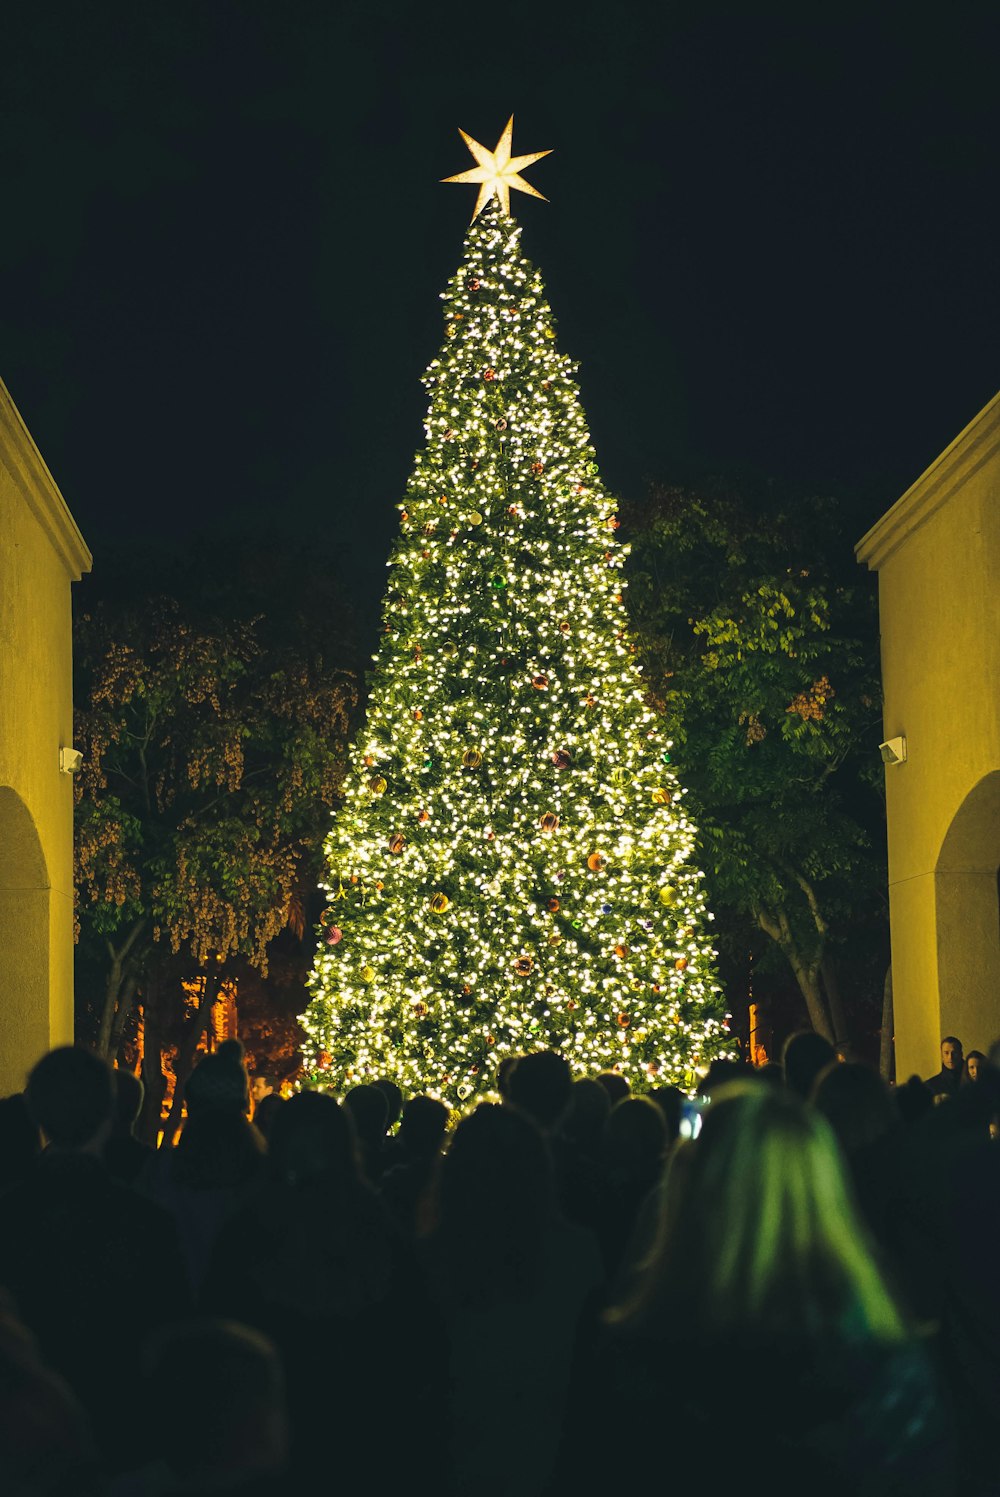 les gens regardent l’arbre de Noël vert illuminé la nuit